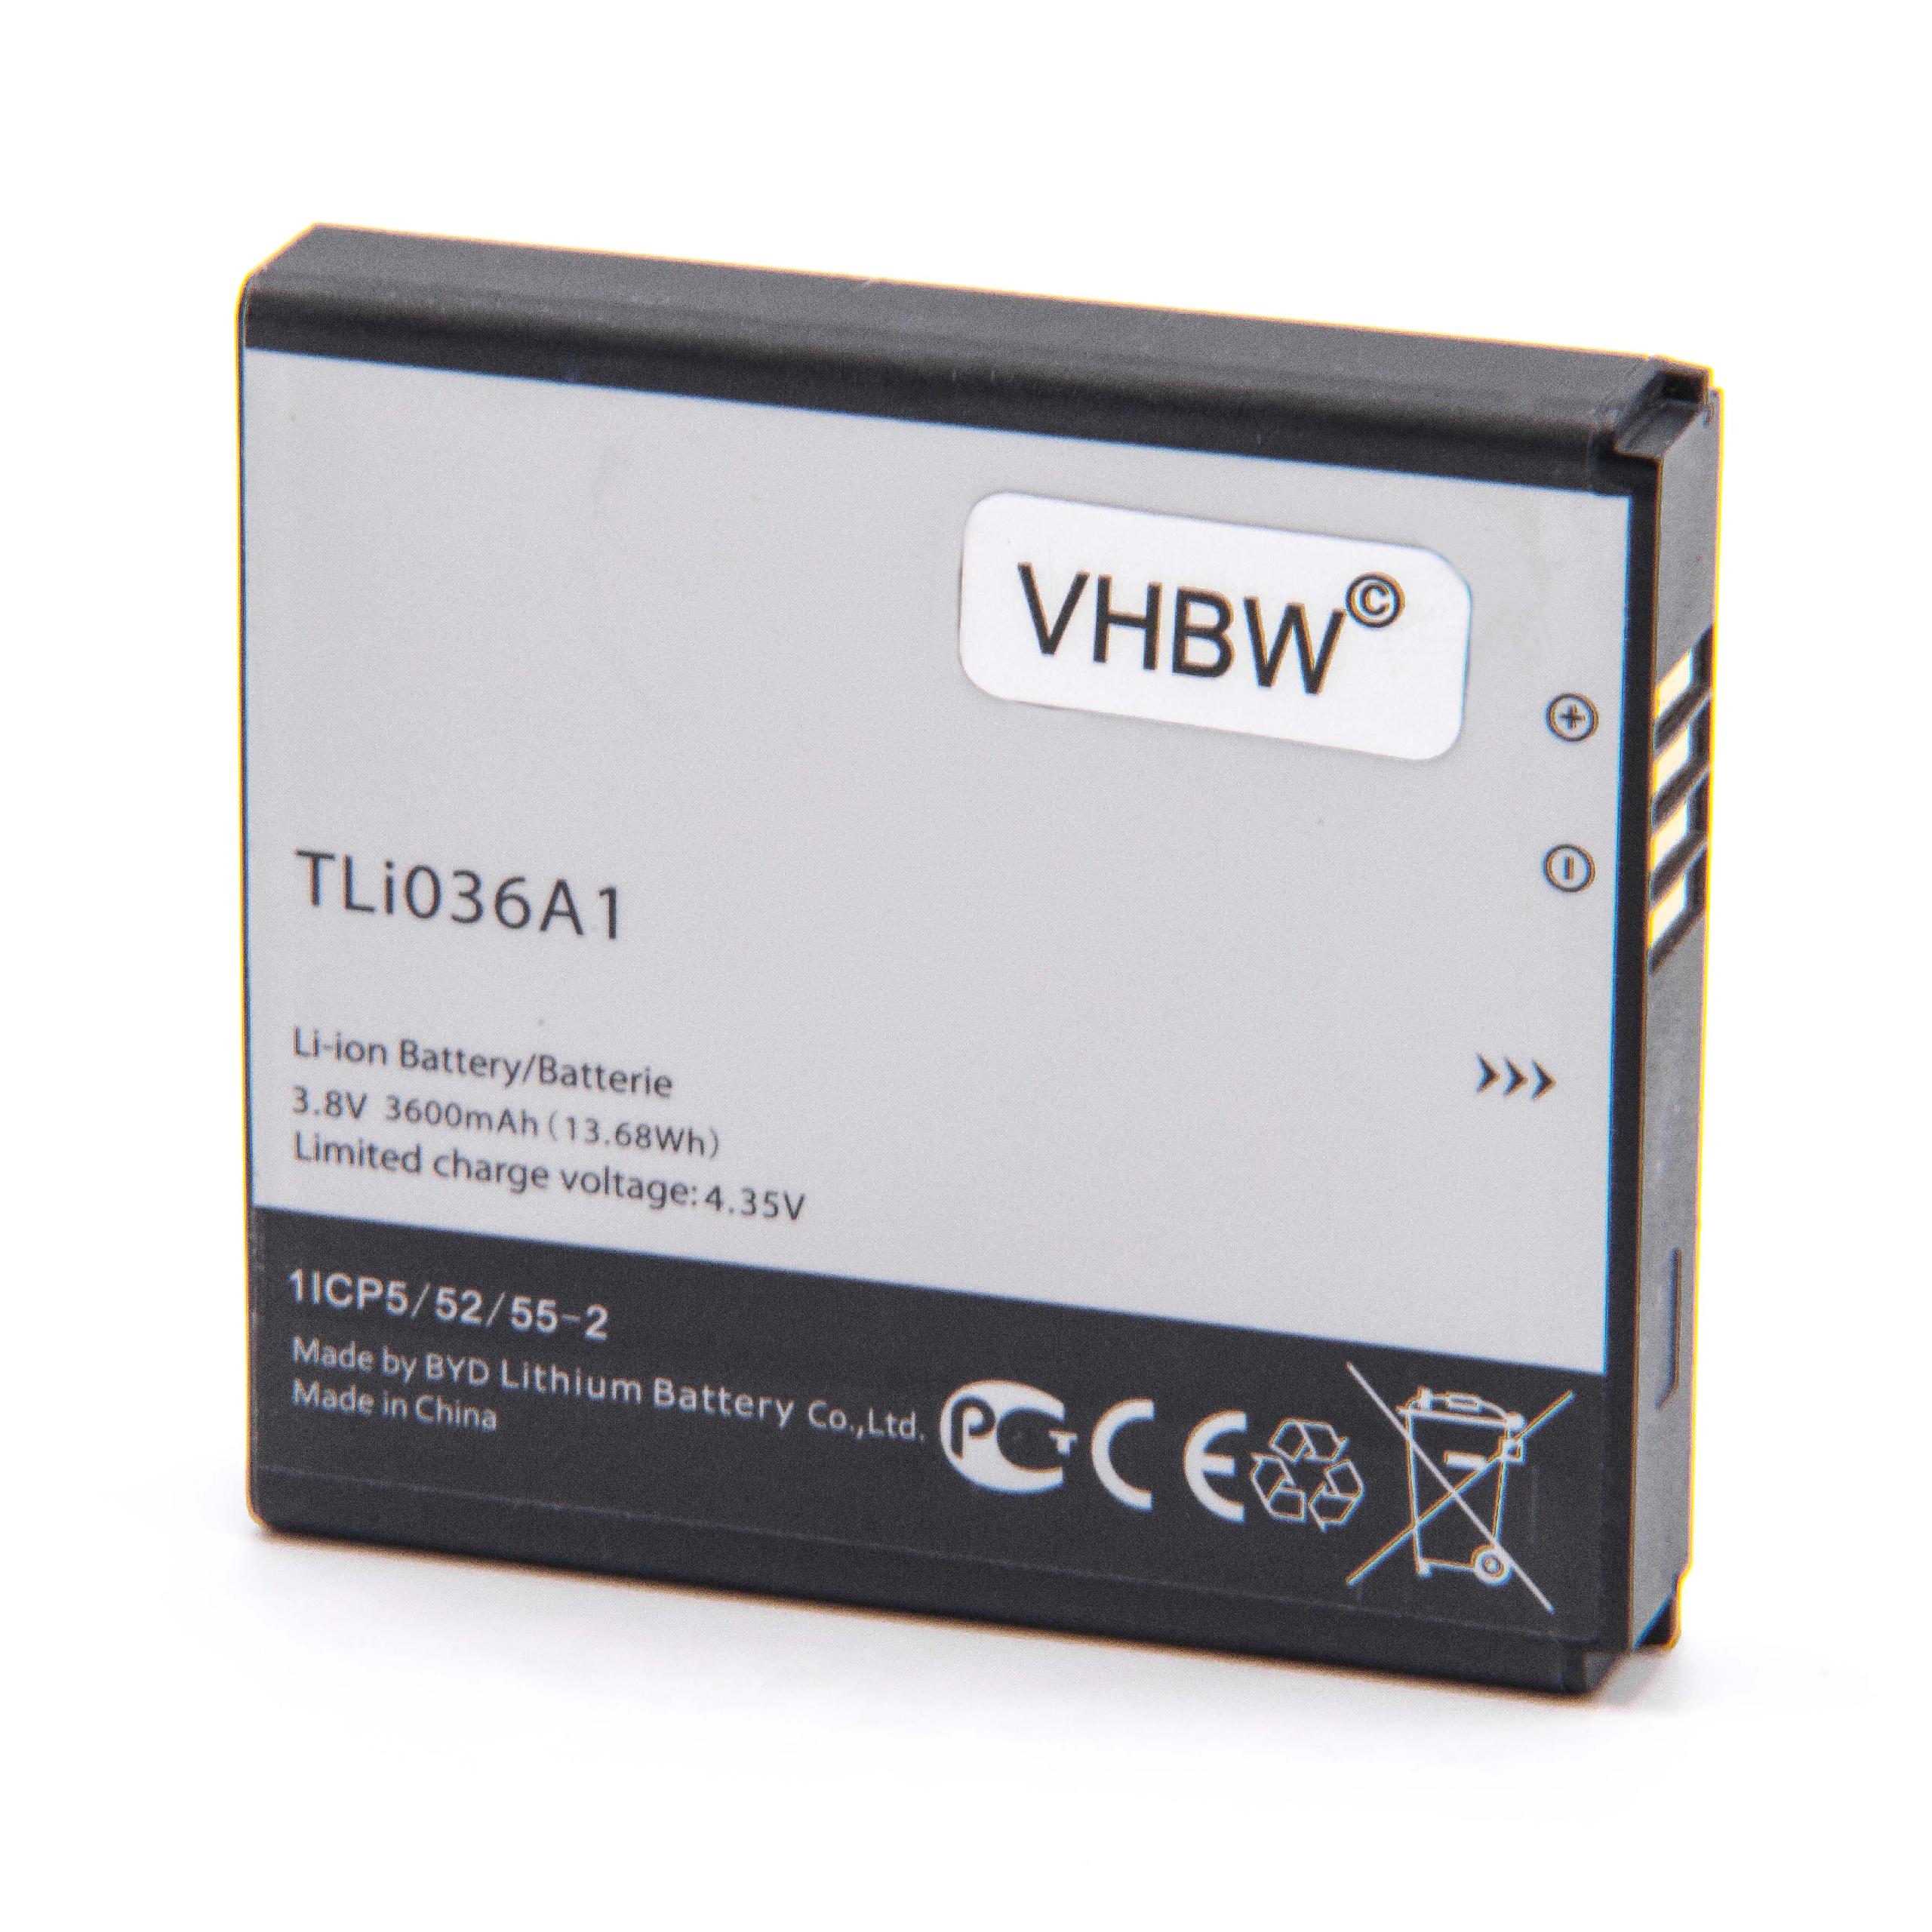 Batterie remplace TLi036A1 pour routeur modem - 3800mAh 3,8V Li-ion